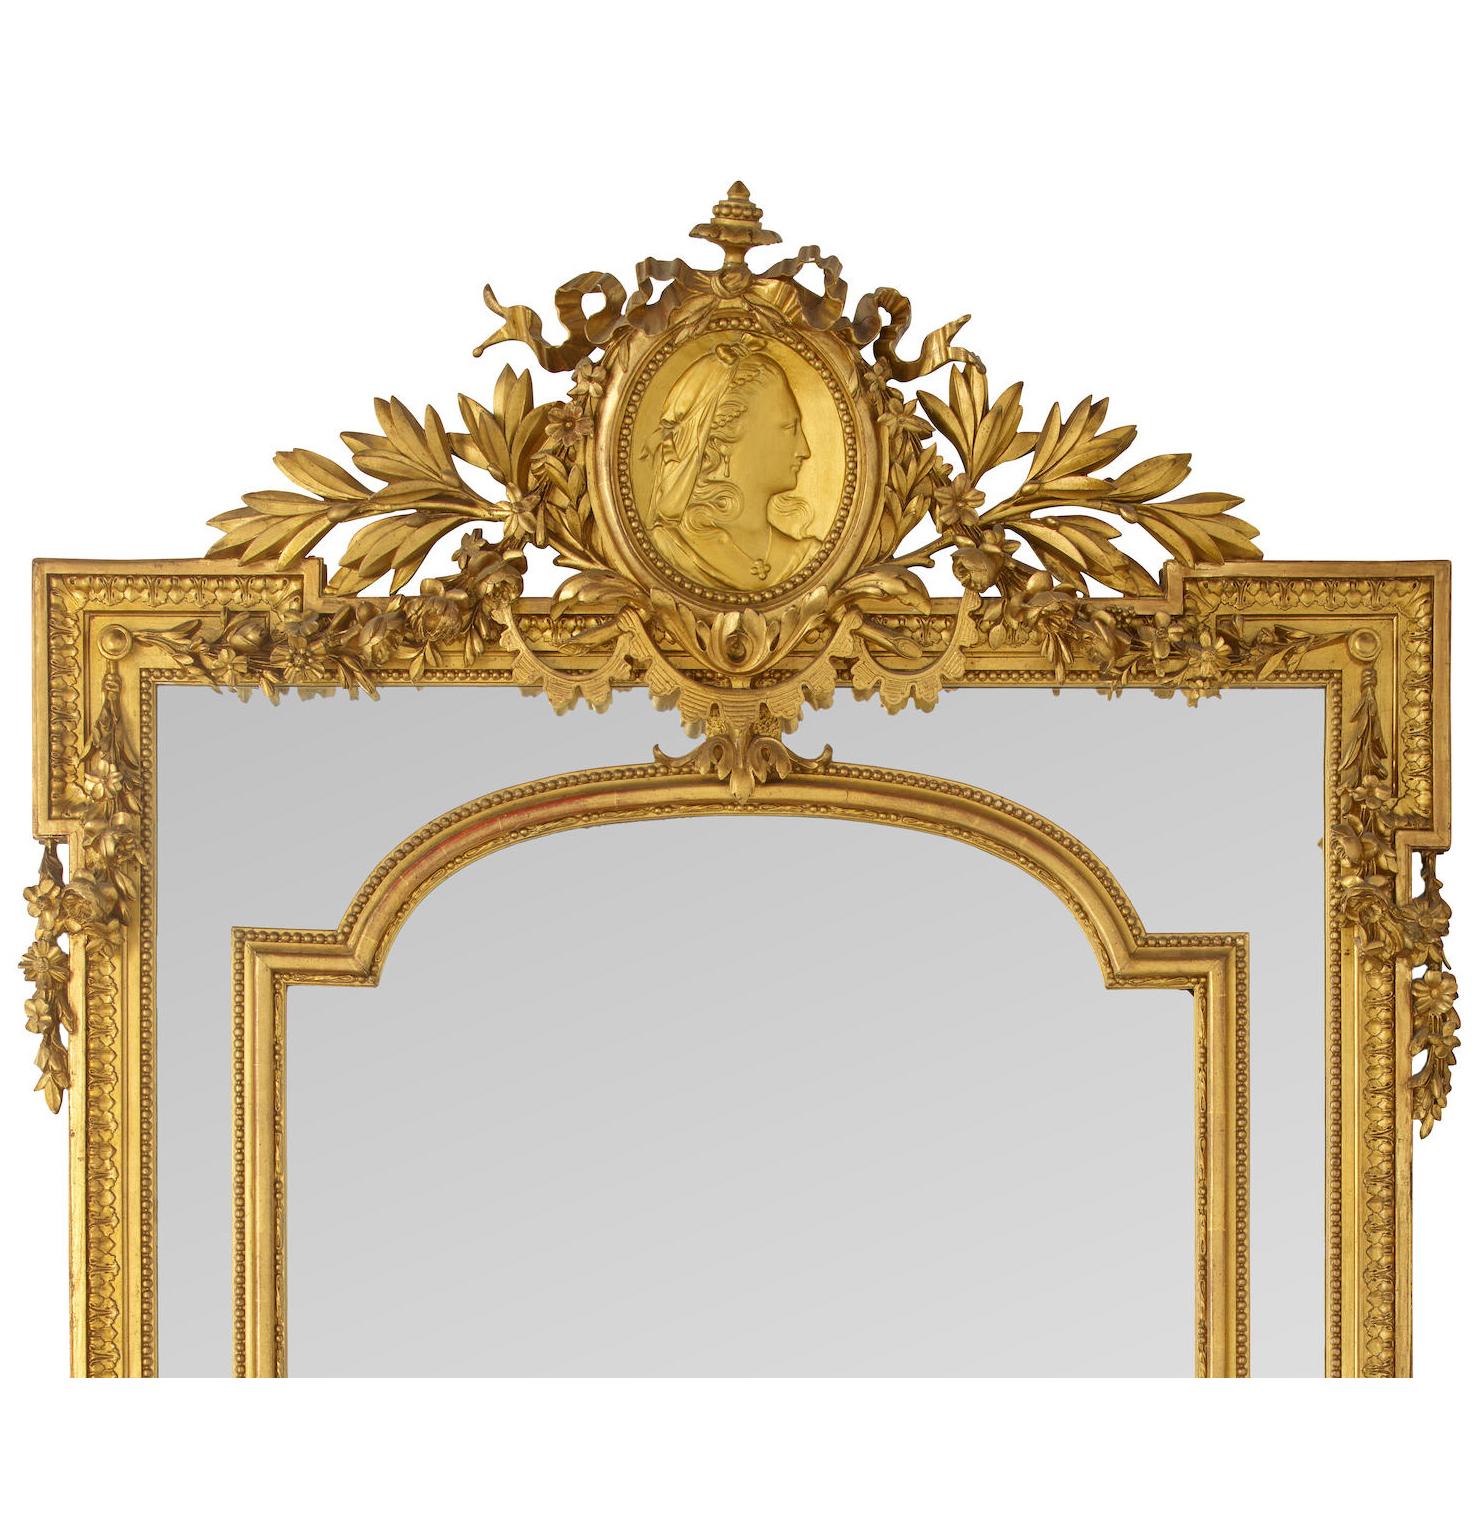 Ein sehr feiner französischer Louis XVI-Stil Gilt-Holz und Gilt-Gesso geschnitzt ornamentalen Mantel Pier Spiegel des 19. Jahrhunderts. Der reich verzierte, geschnitzte Rahmen aus Goldholz ist mit einem Schildmedaillon einer Jungfrau gekrönt, das